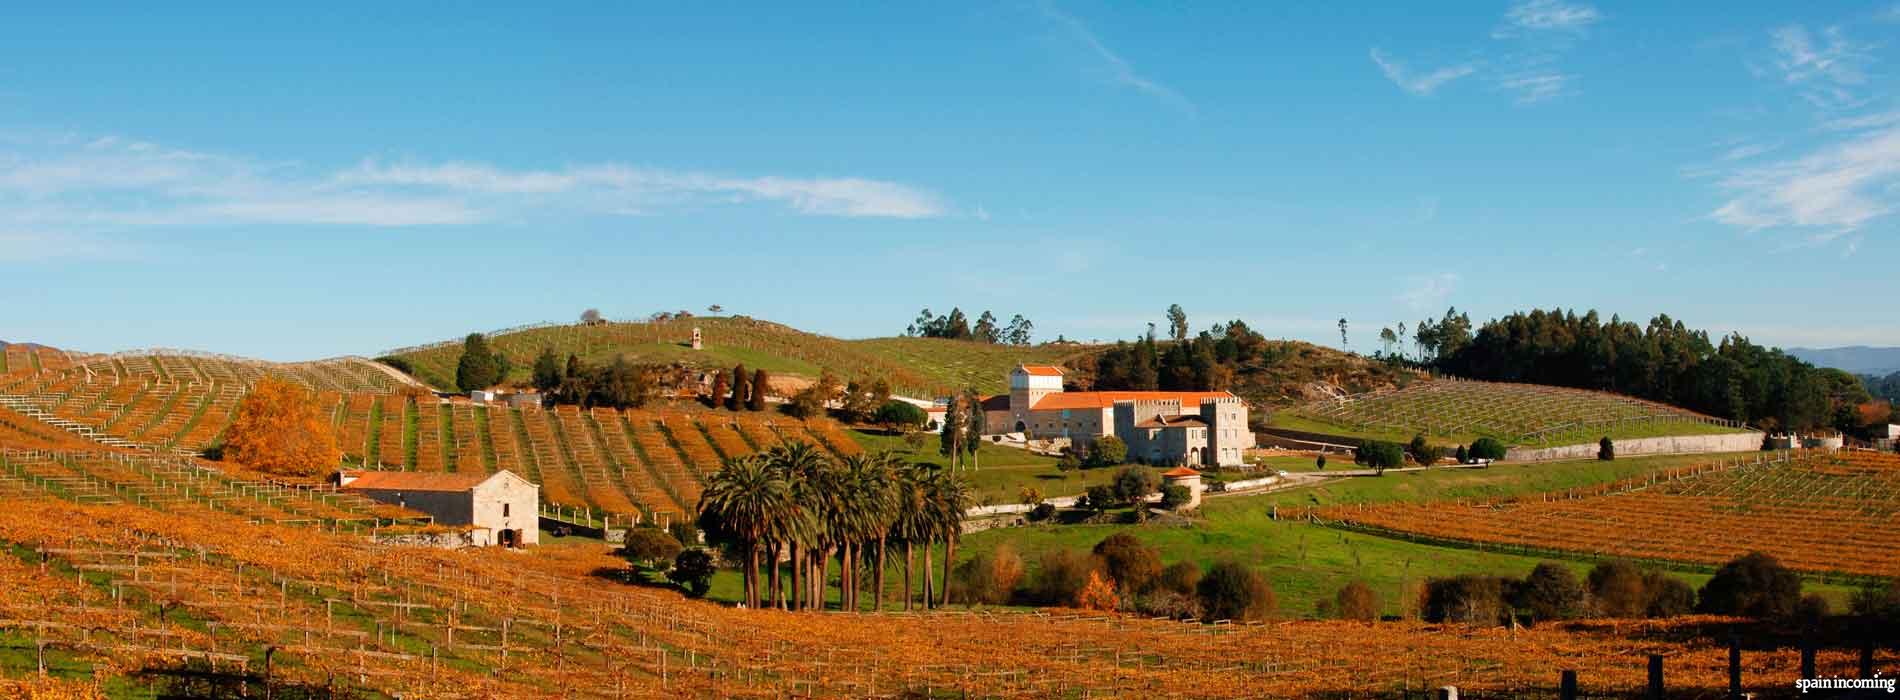 The Camellia route in Galicia - Rías Baixas vineyards